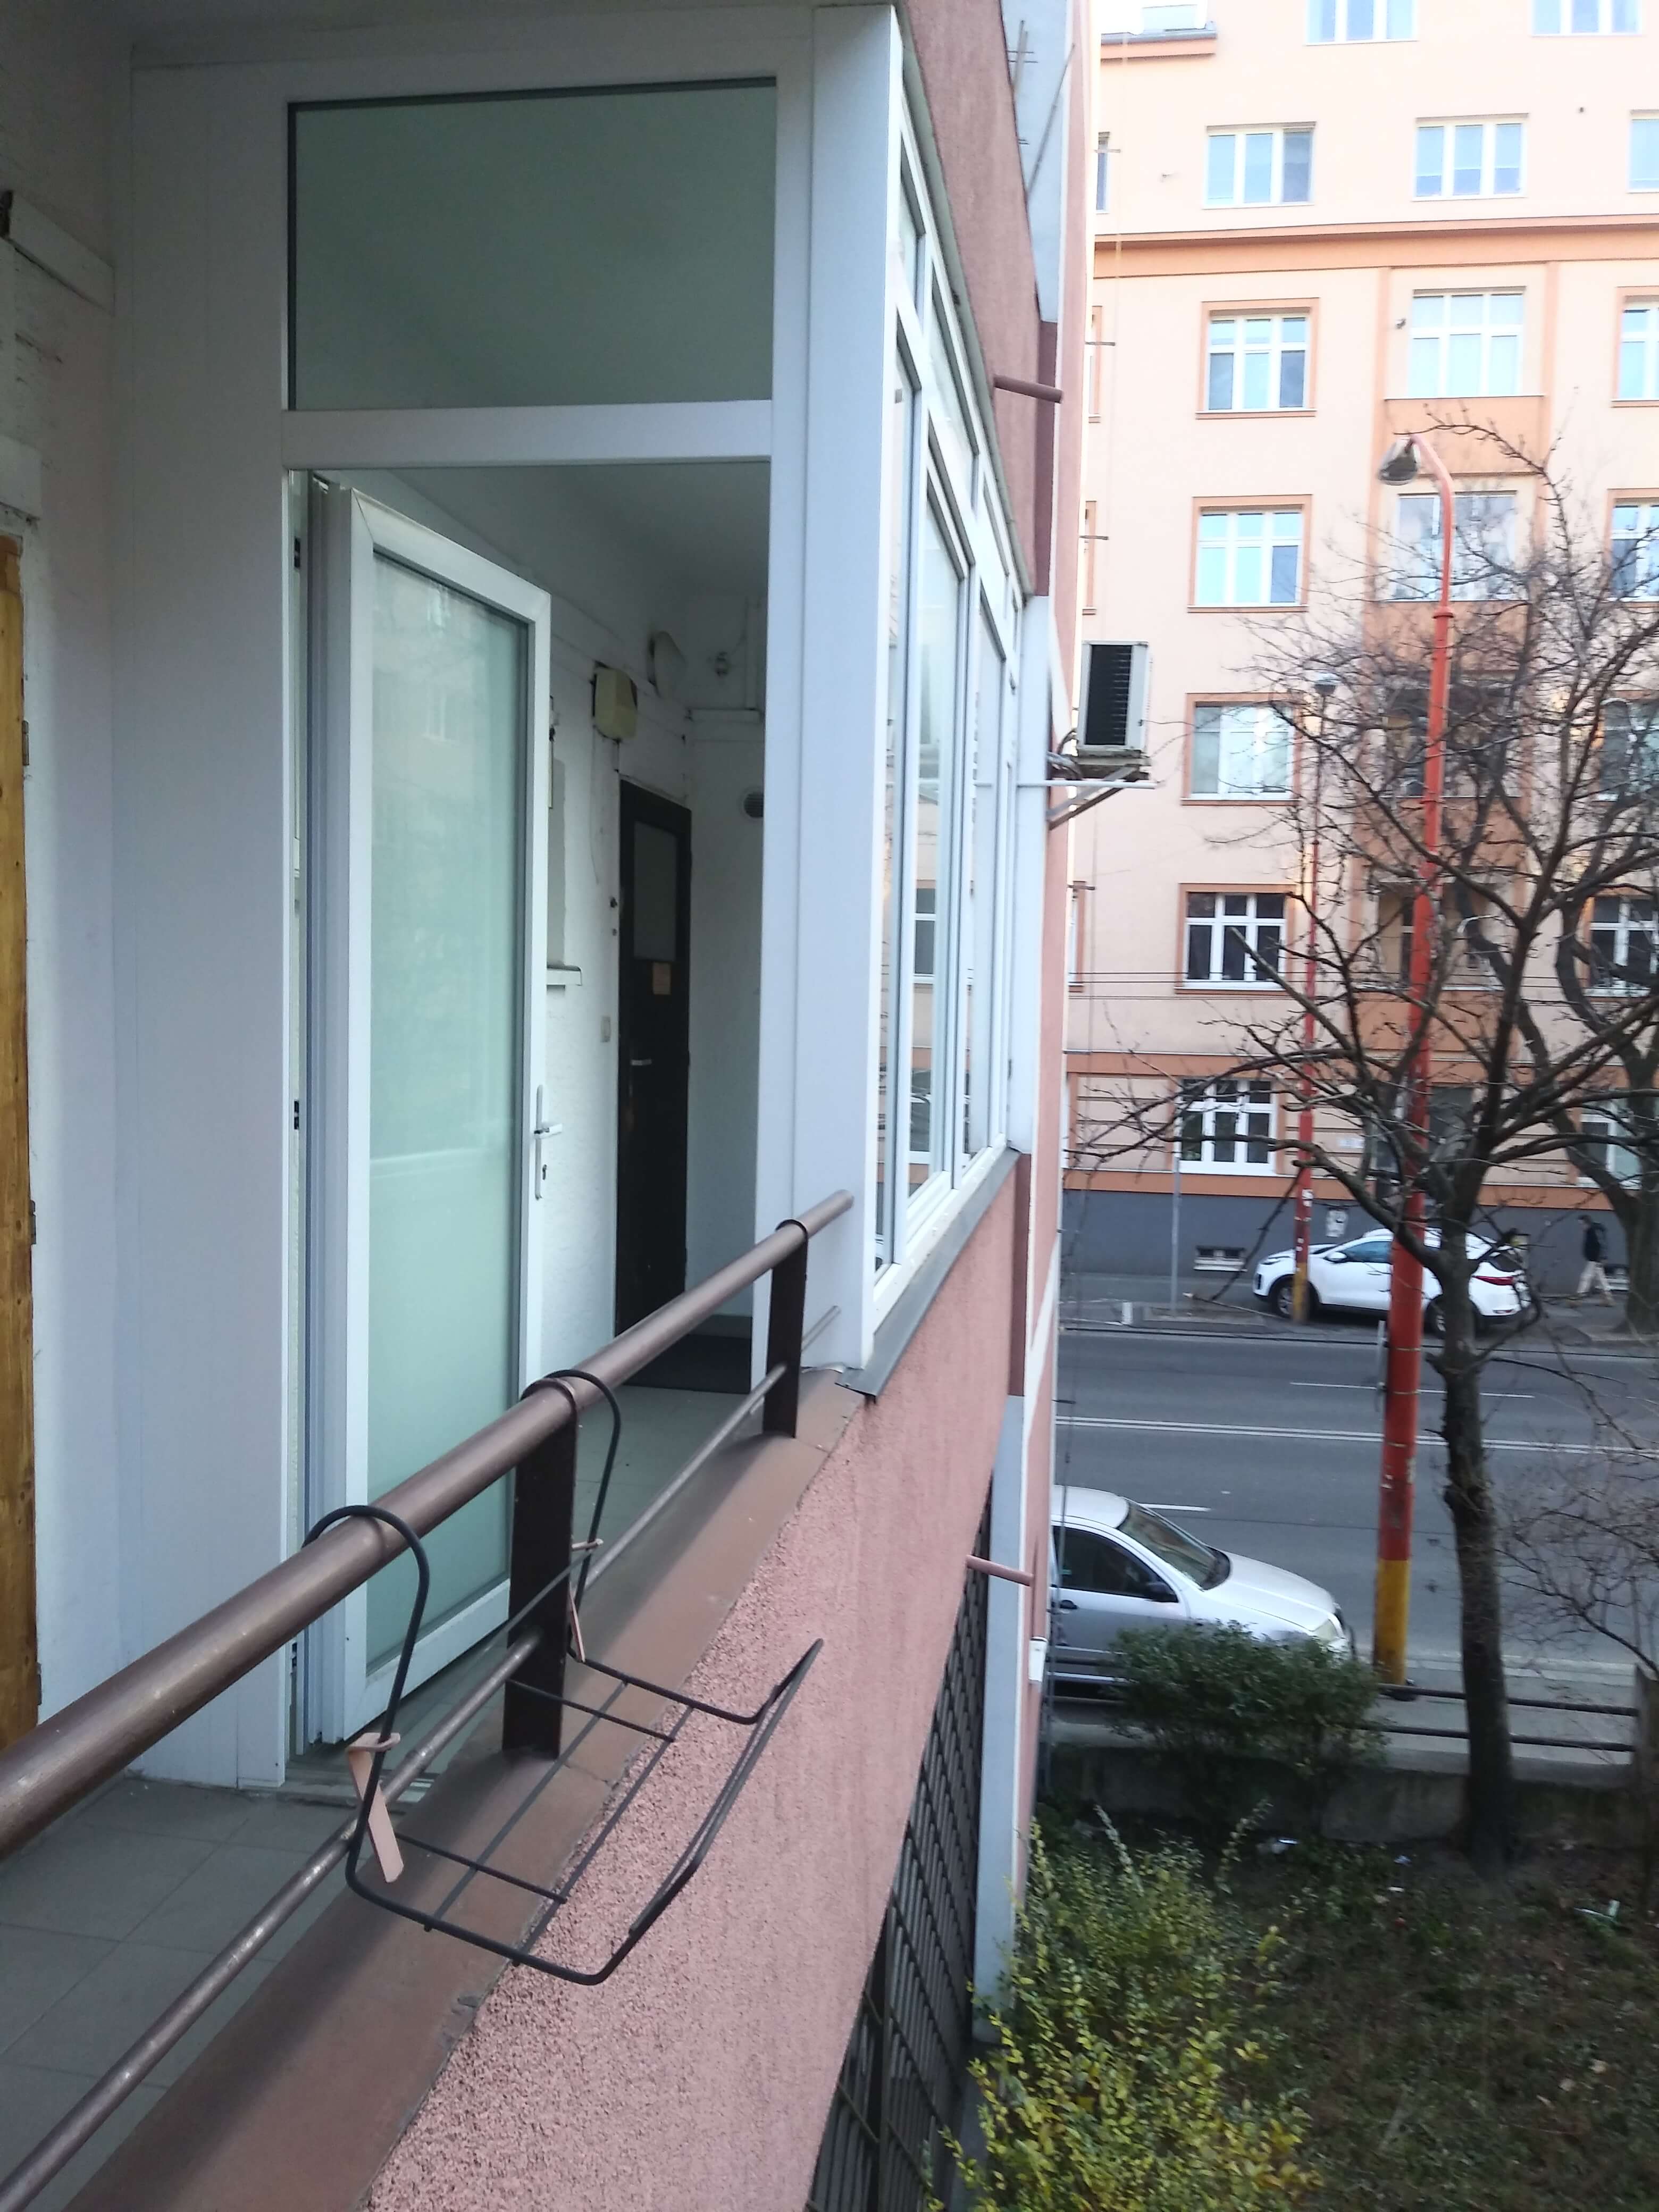 Prenajaté: Prenájom veľkého 2 izbového bytu 80m2, staré mesto, Šancová ulica 37, Bratislava, zariadený-4